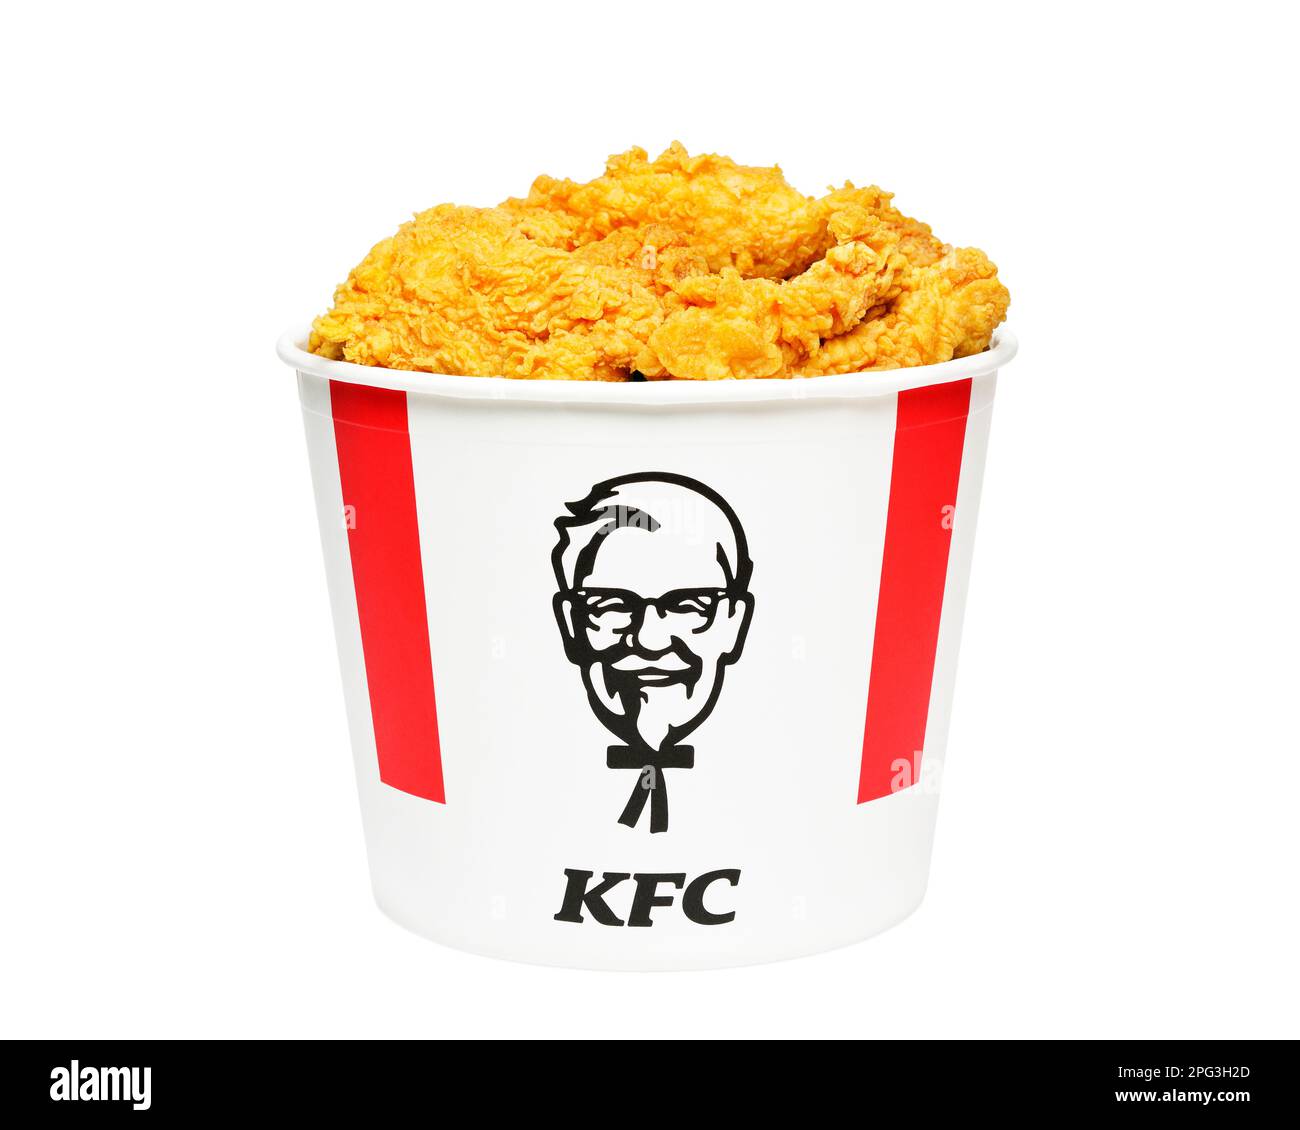 KFC Bucket aus einem Kentucky Fried Chicken Fast Food Restaurant, Großbritannien Stockfoto